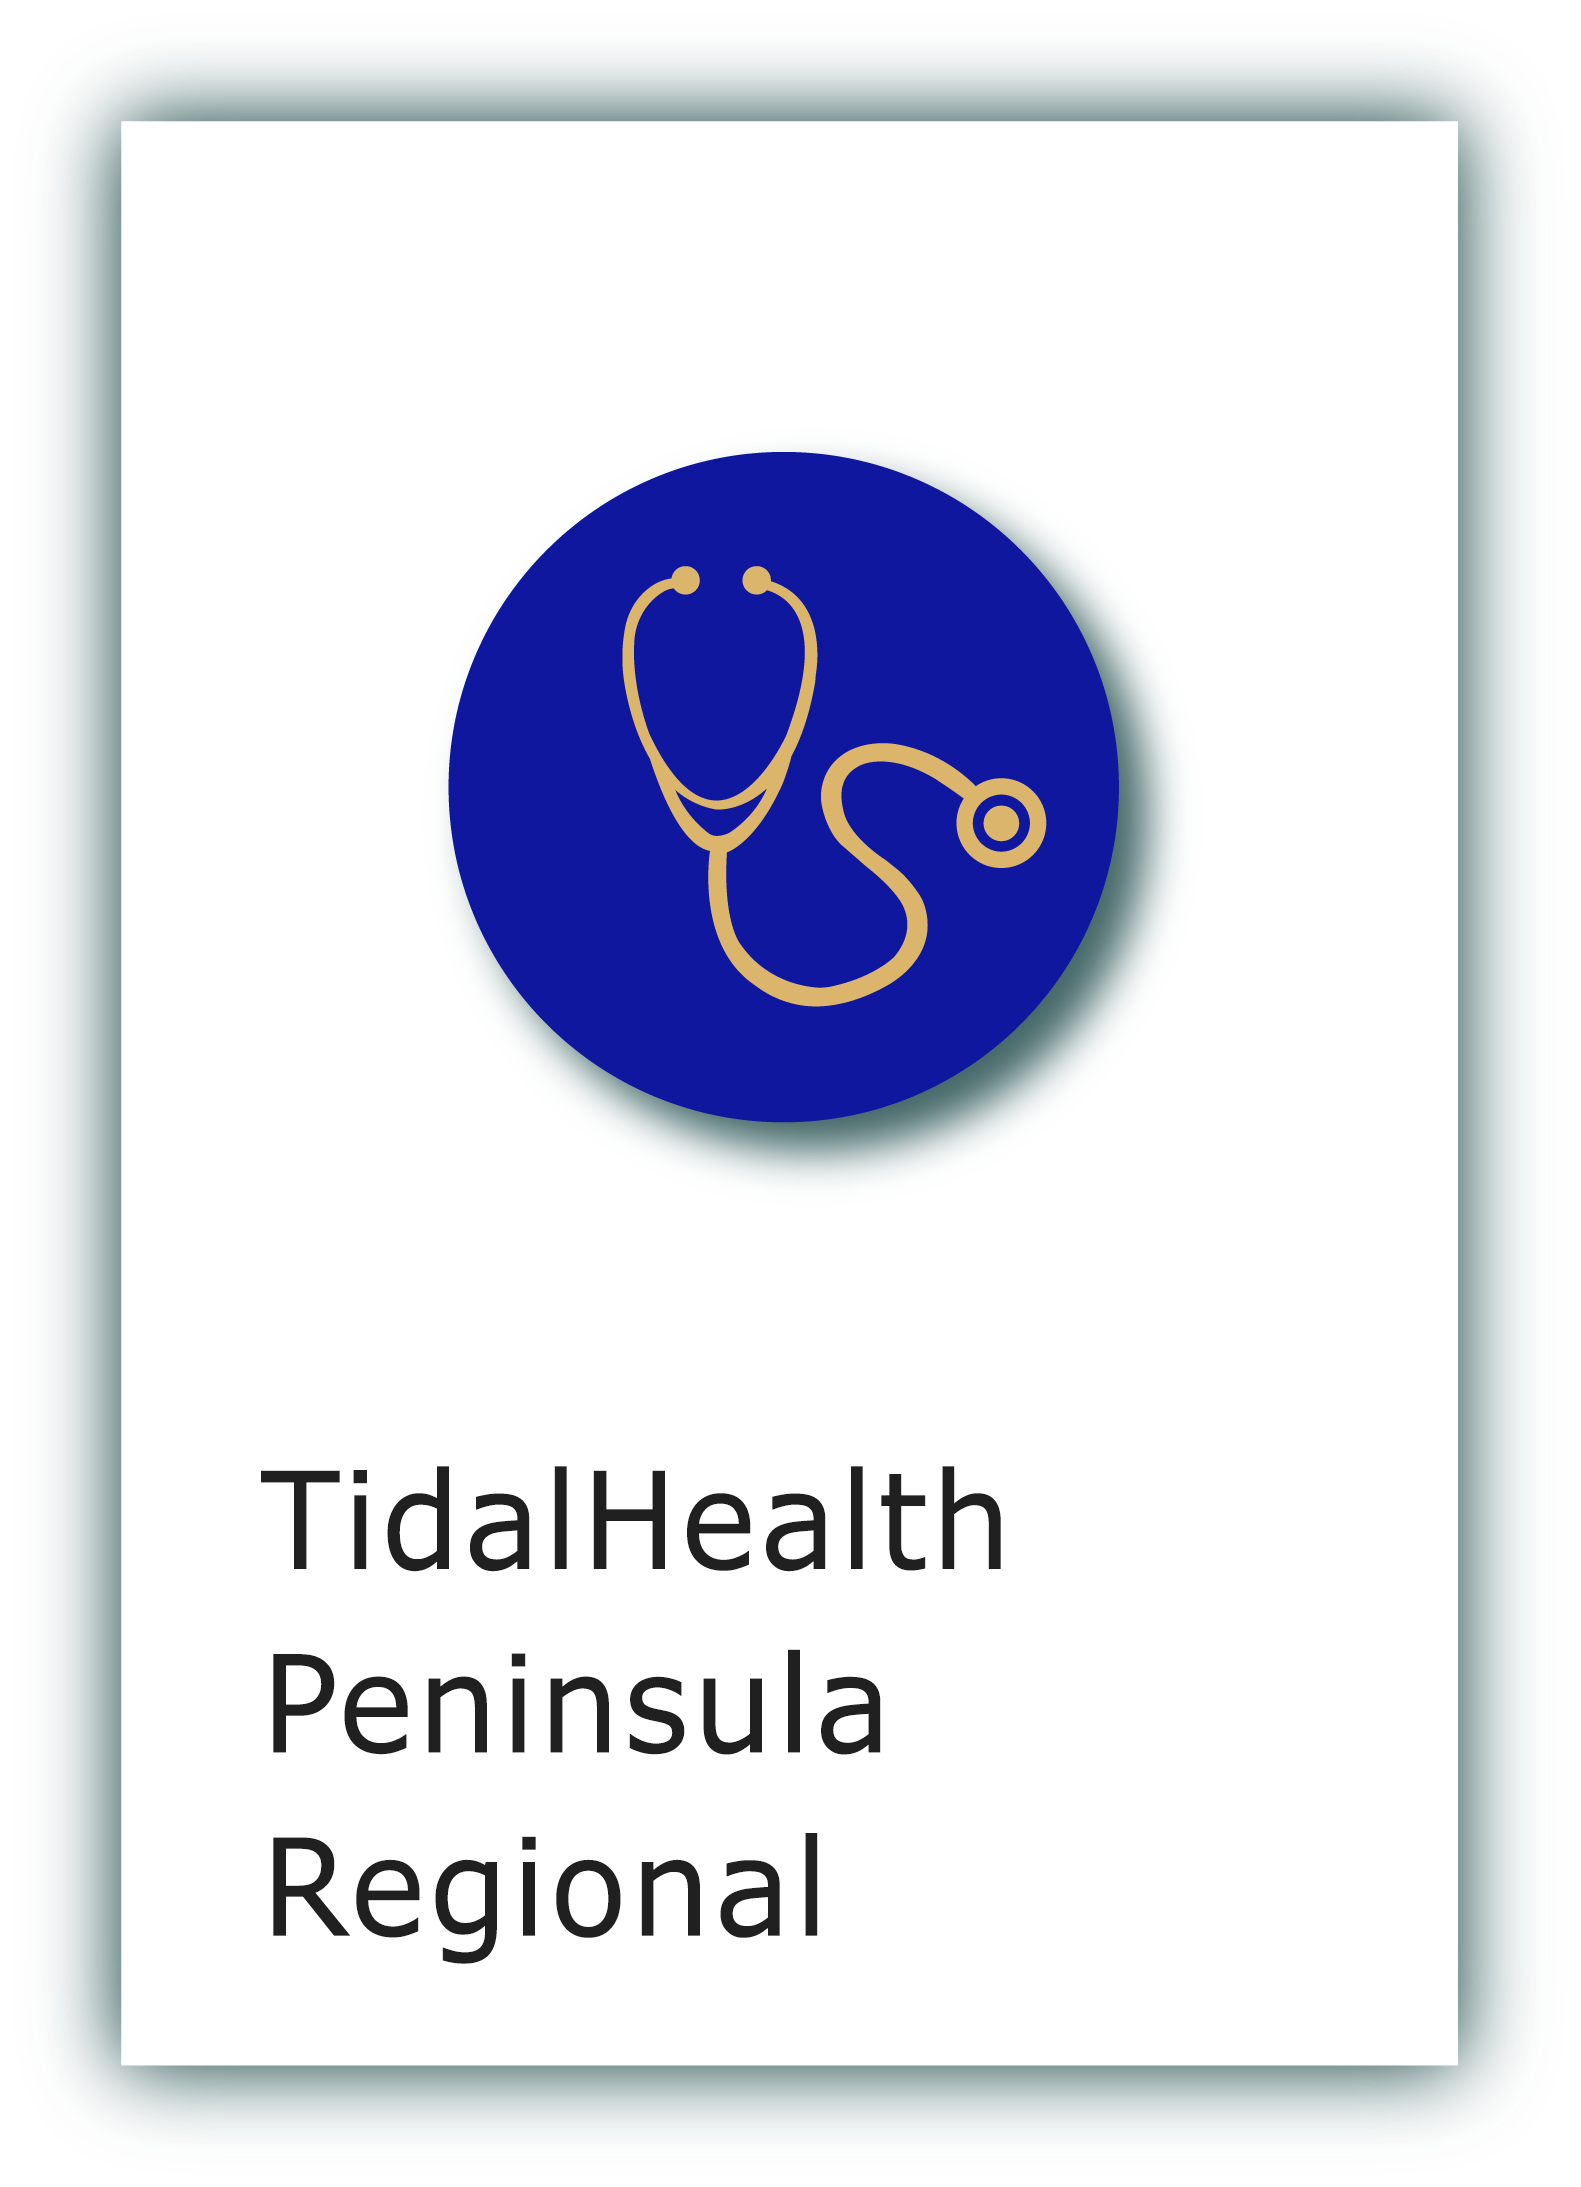 TidalHealth Peninsula Regional